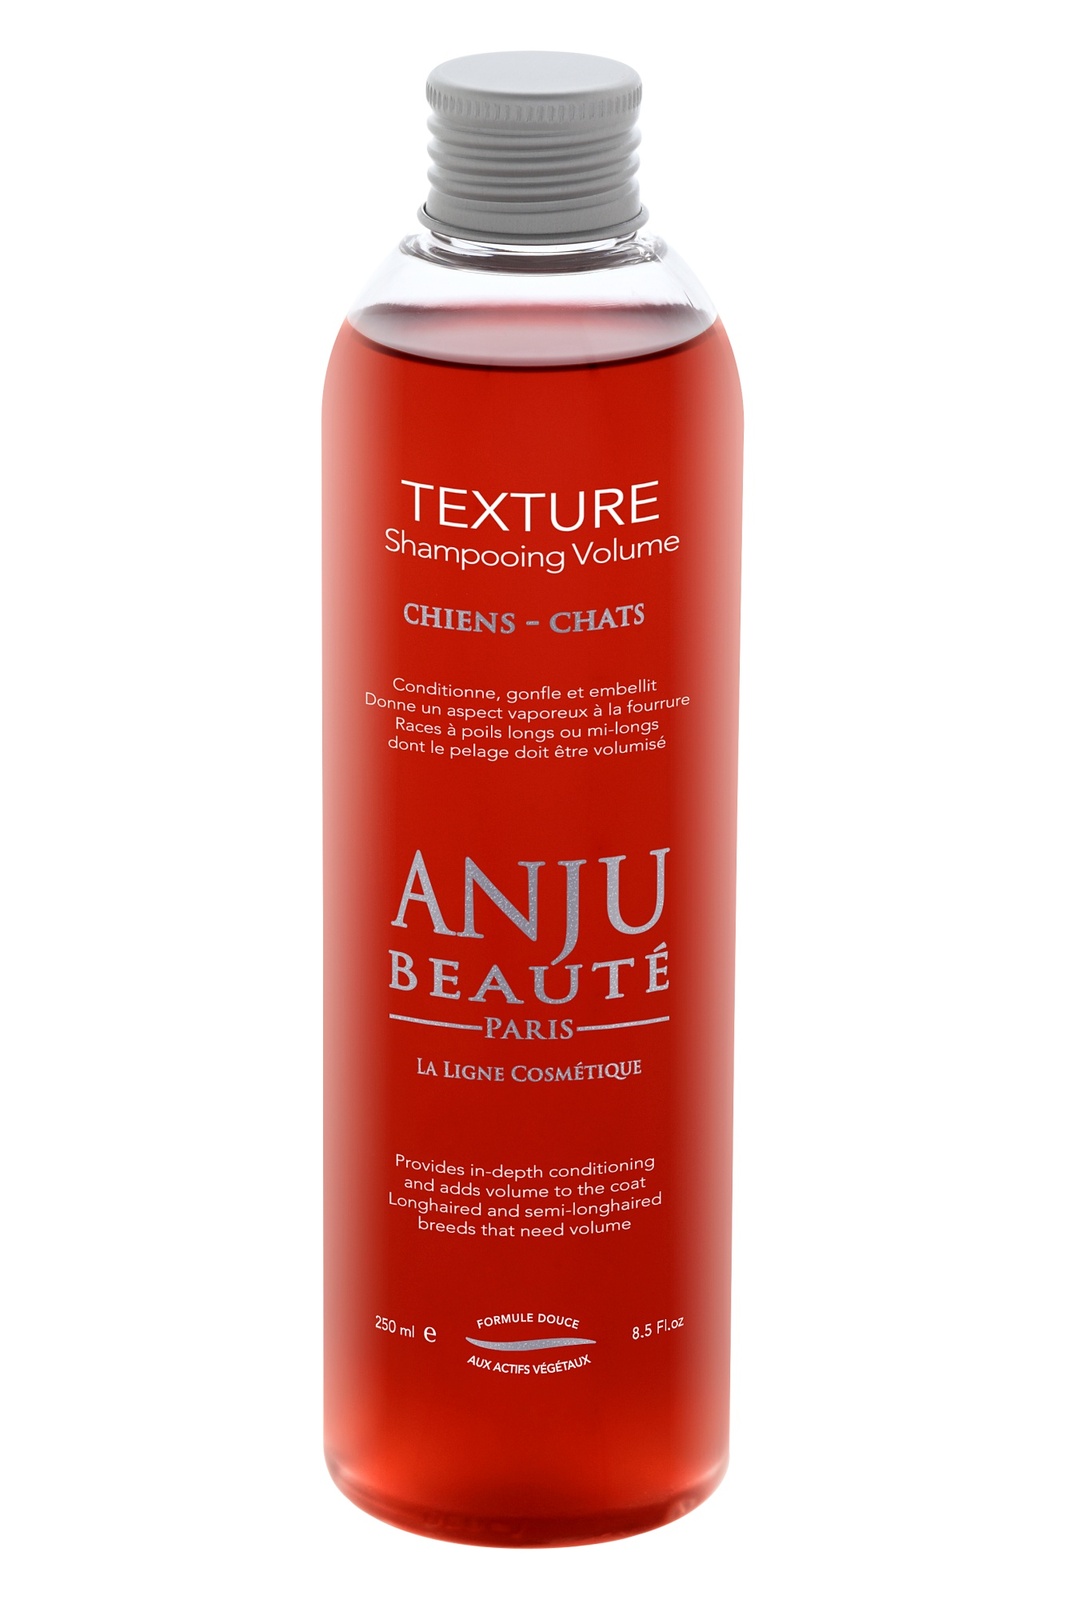 Anju Beaute шампунь "Текстурный" для объема: экстракты зародышей пшеницы и бамбука, 1:5 (260 г)